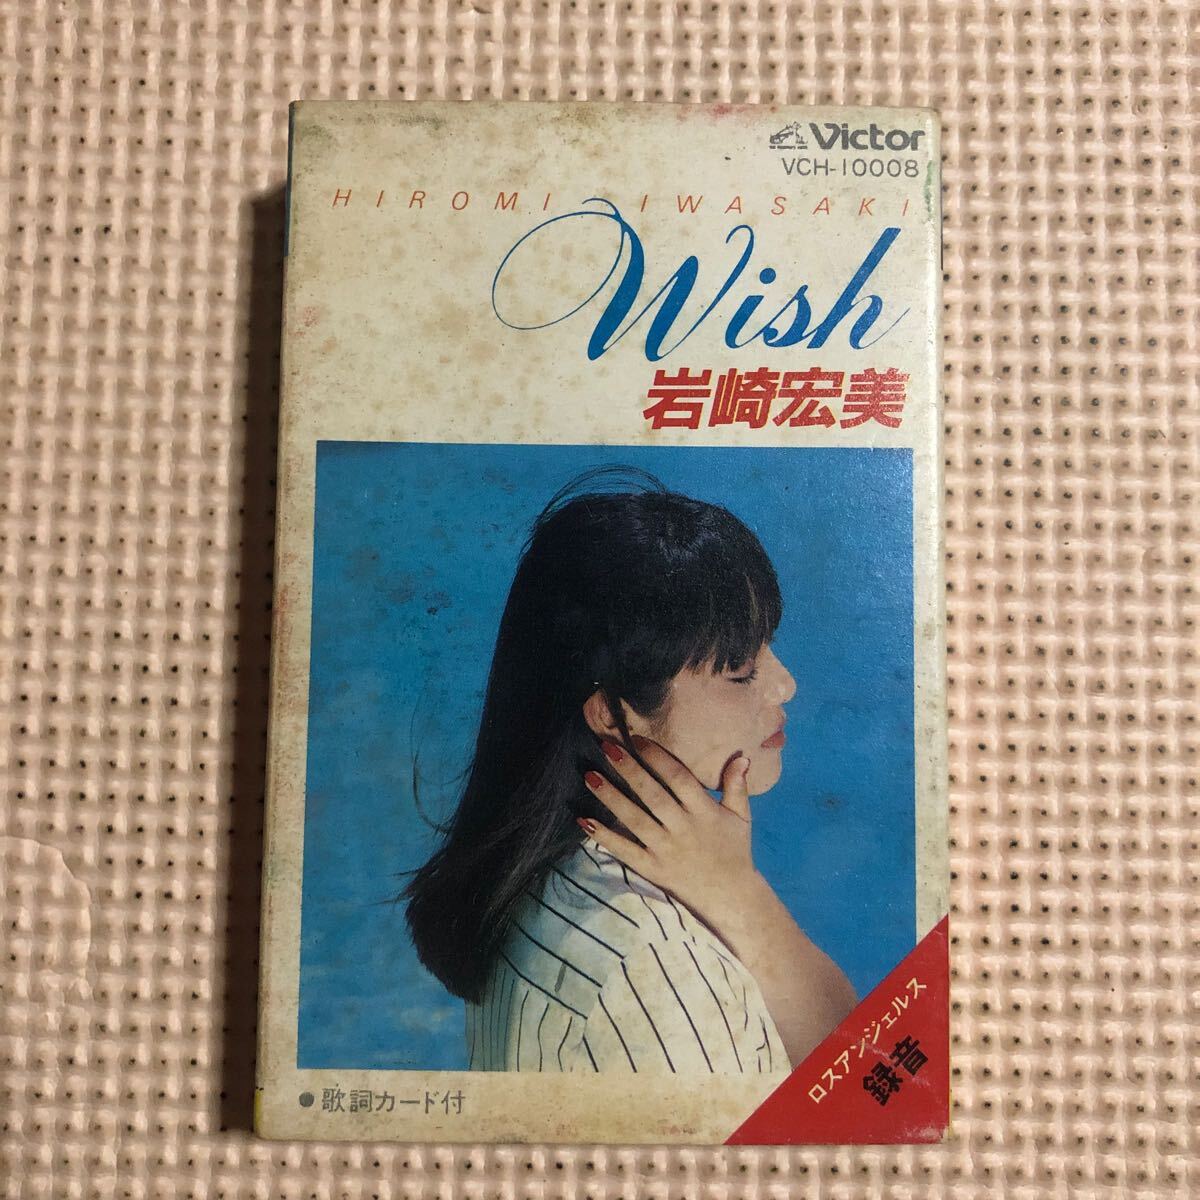 岩崎宏美 WISH【歌詞カード欠品】国内盤カセットテープ★の画像1